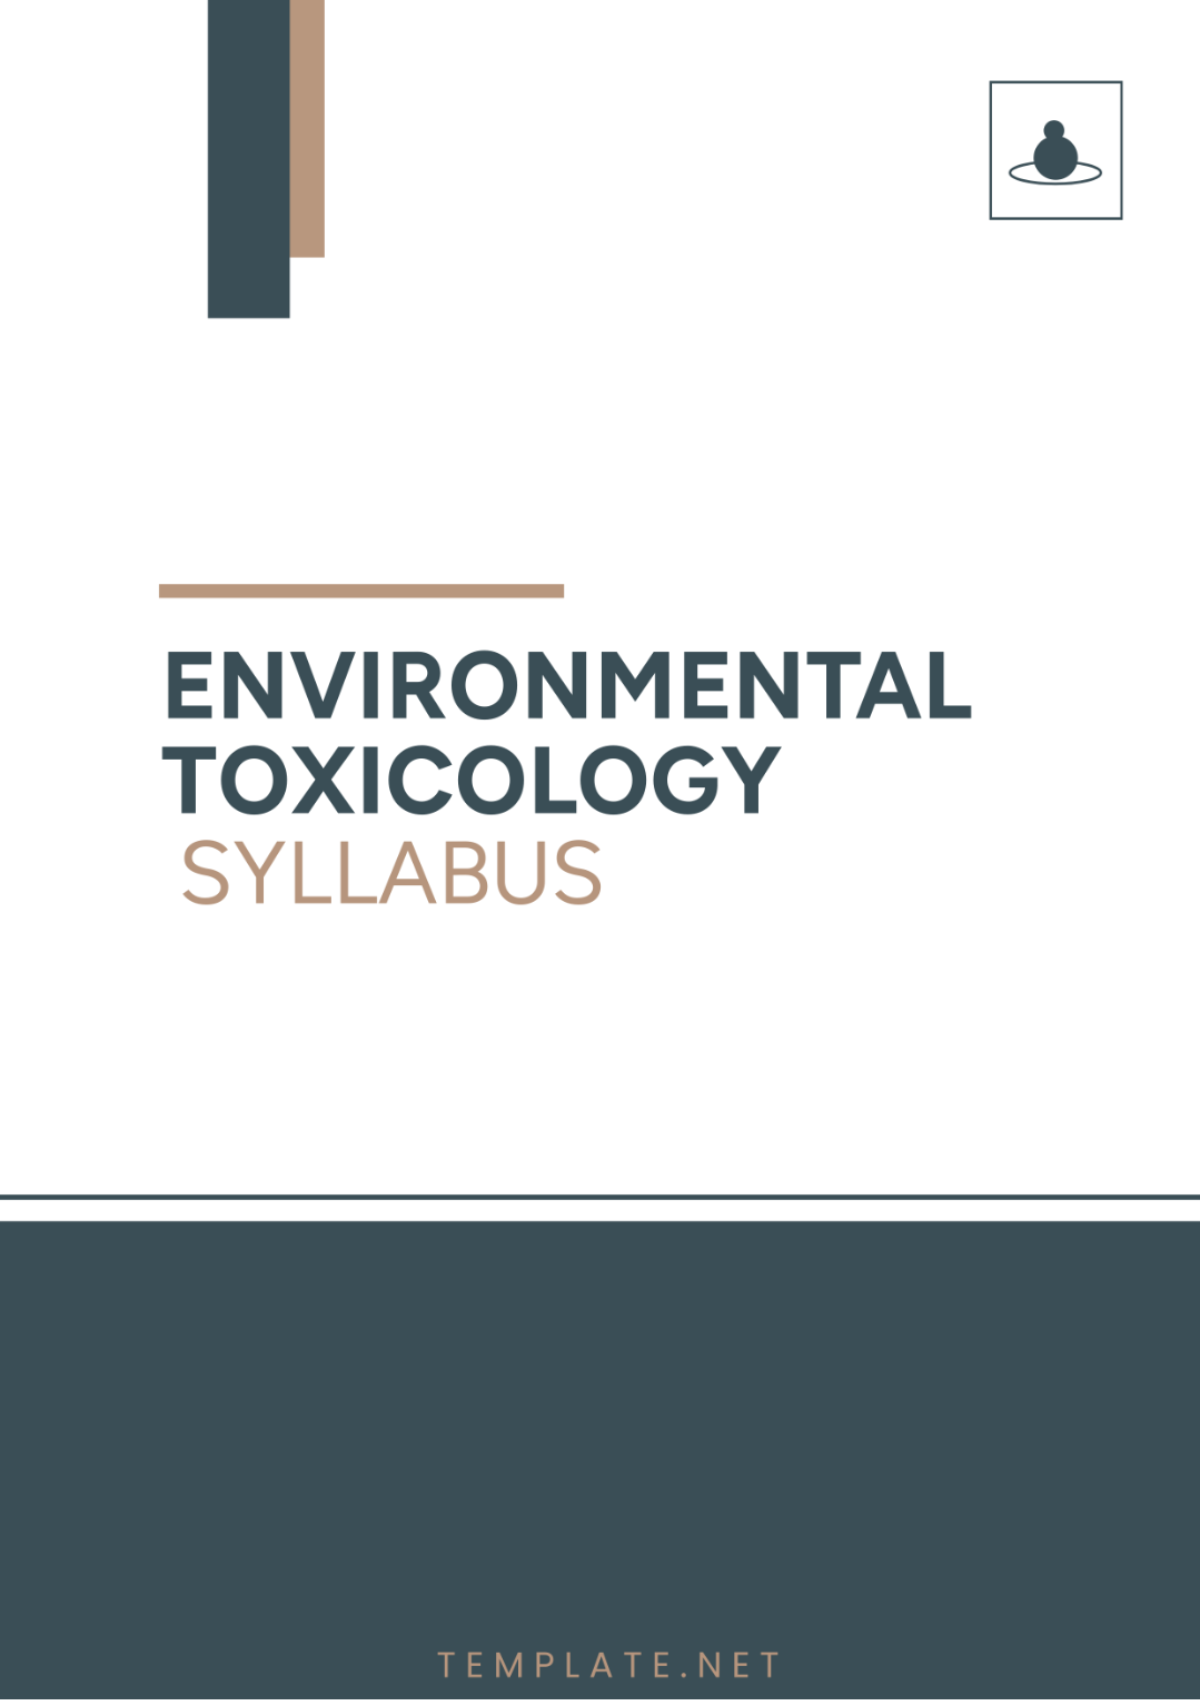 Environmental Toxicology Syllabus Template